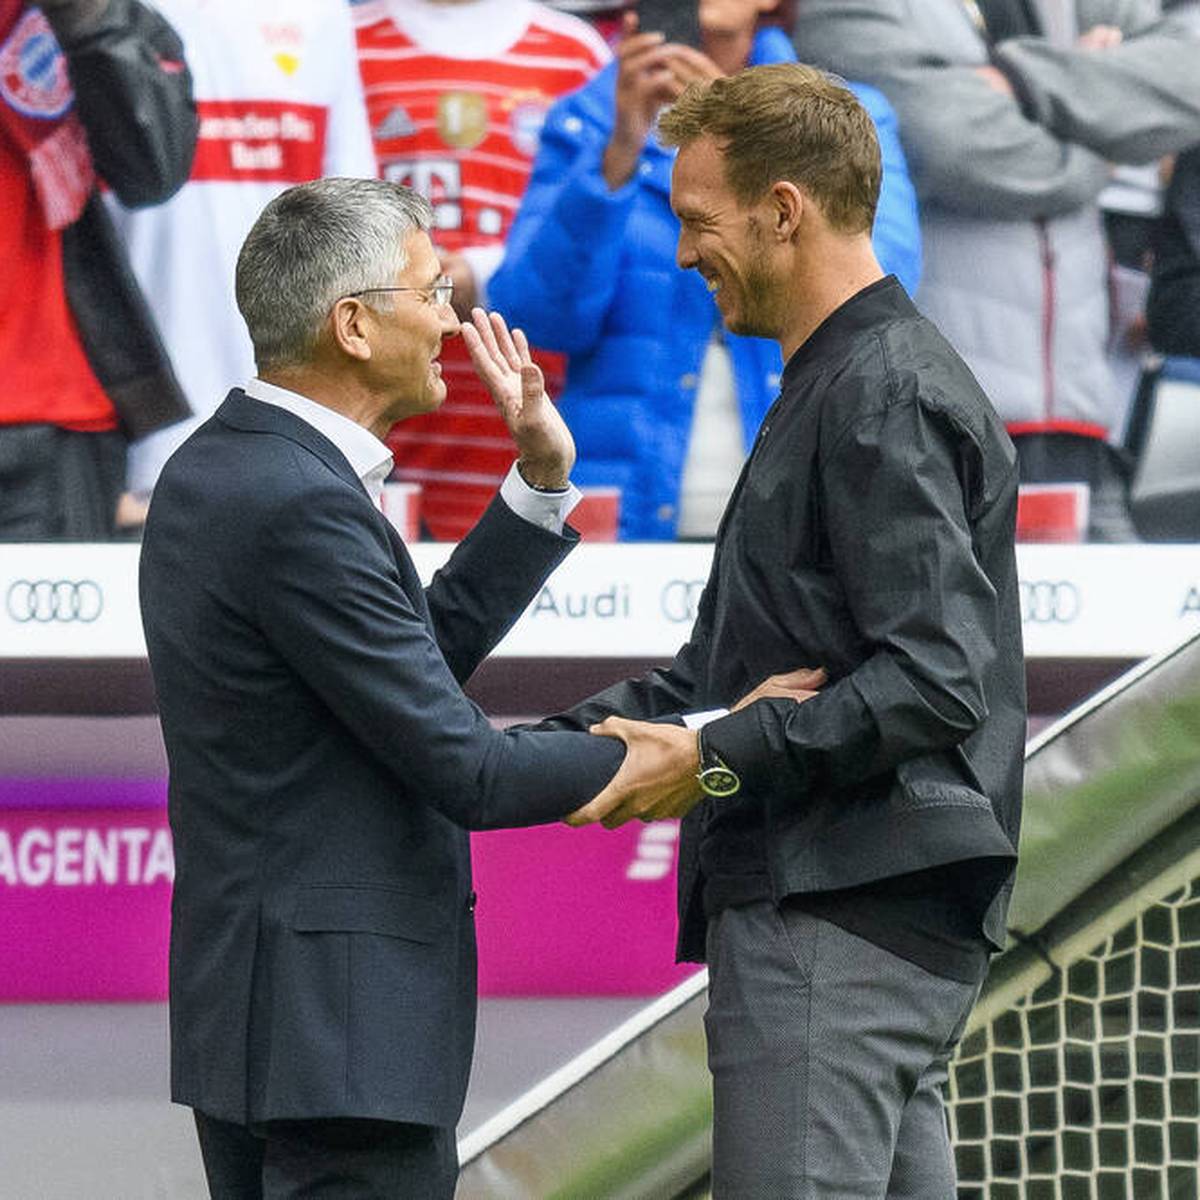 Präsident Herbert Hainer vom deutschen Meister Bayern München nimmt Hasan Salihamidzic gegen Kritik an dessen Transferpolitik in Schutz. Auch für Trainer Julian Nagelsmann hat er warme Worte.